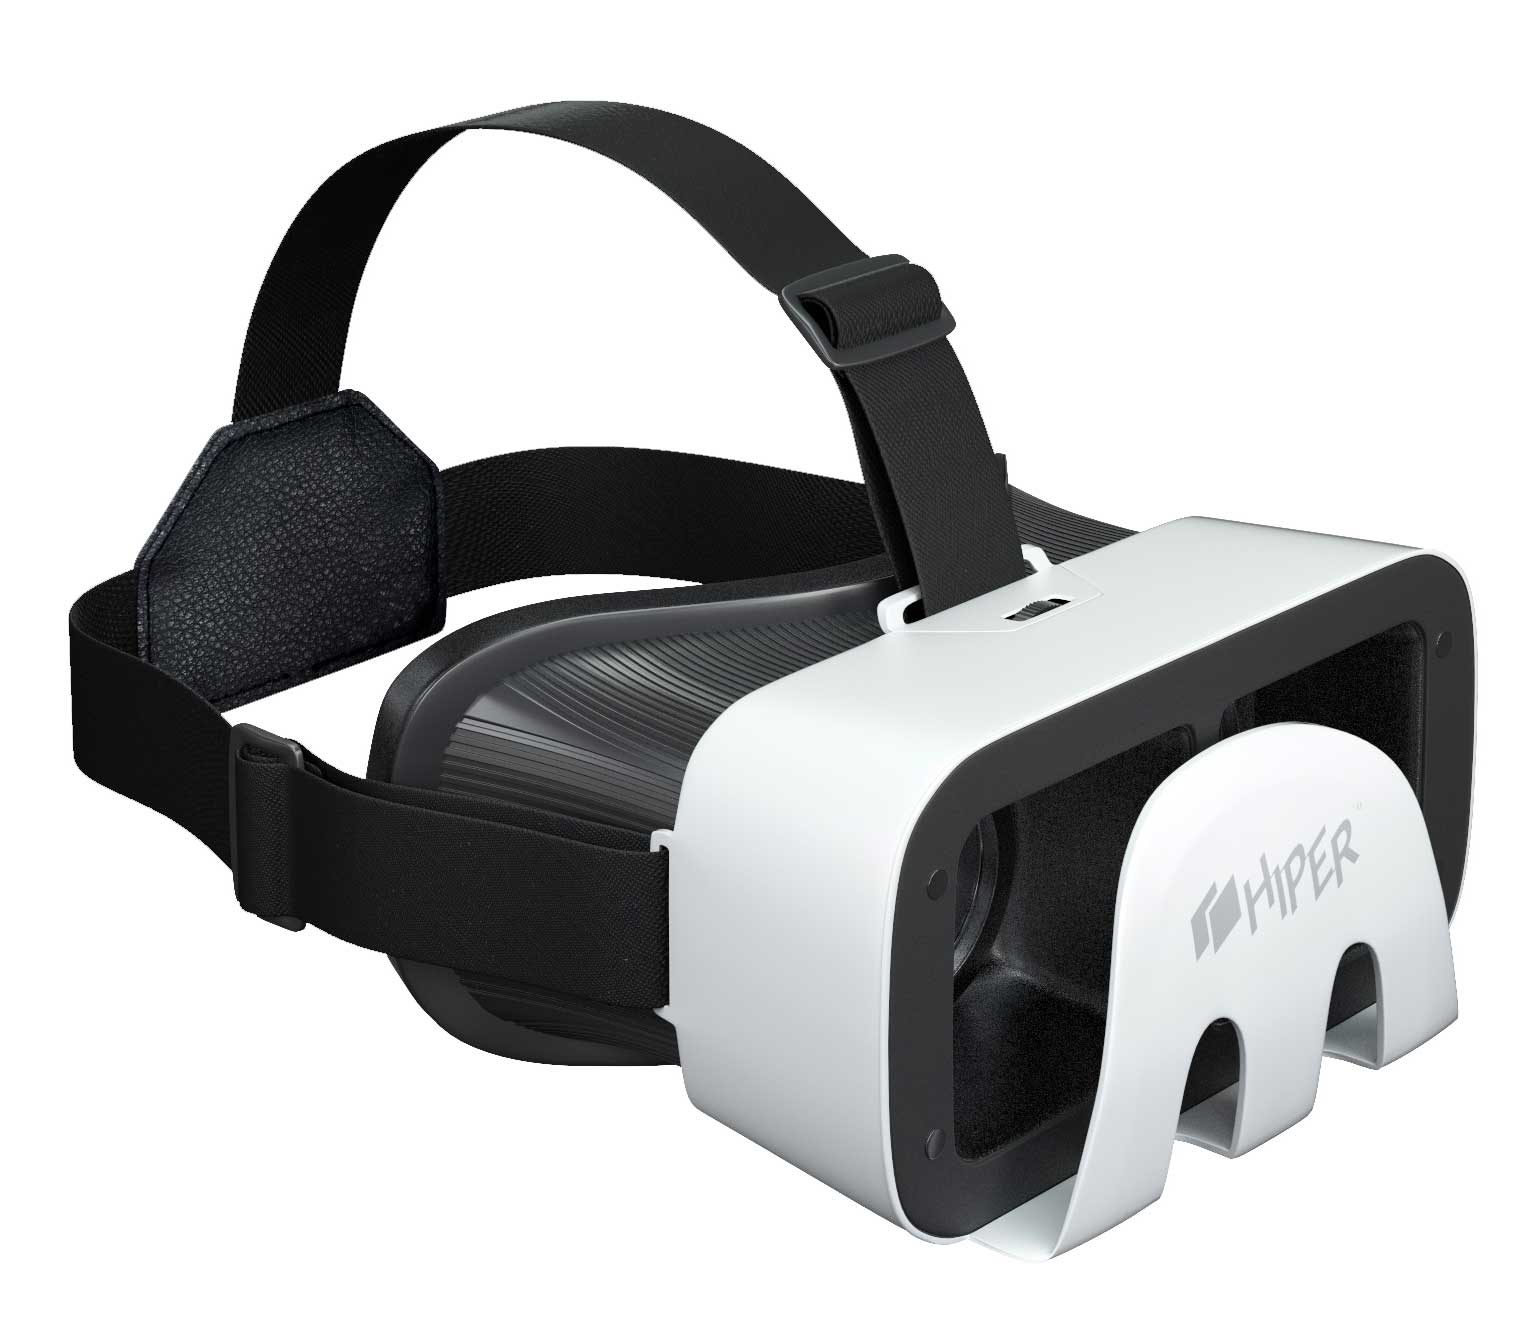 Шлемы виртуальной реальности для пк купить. Очки виртуальной реальности Hiper VRR. Очки виртуальной реальности Hiper VRR белые. Очки виртуальной реальности Hiper VRR черный/белый. Очки виртуальной реальности Hiper VR Max.